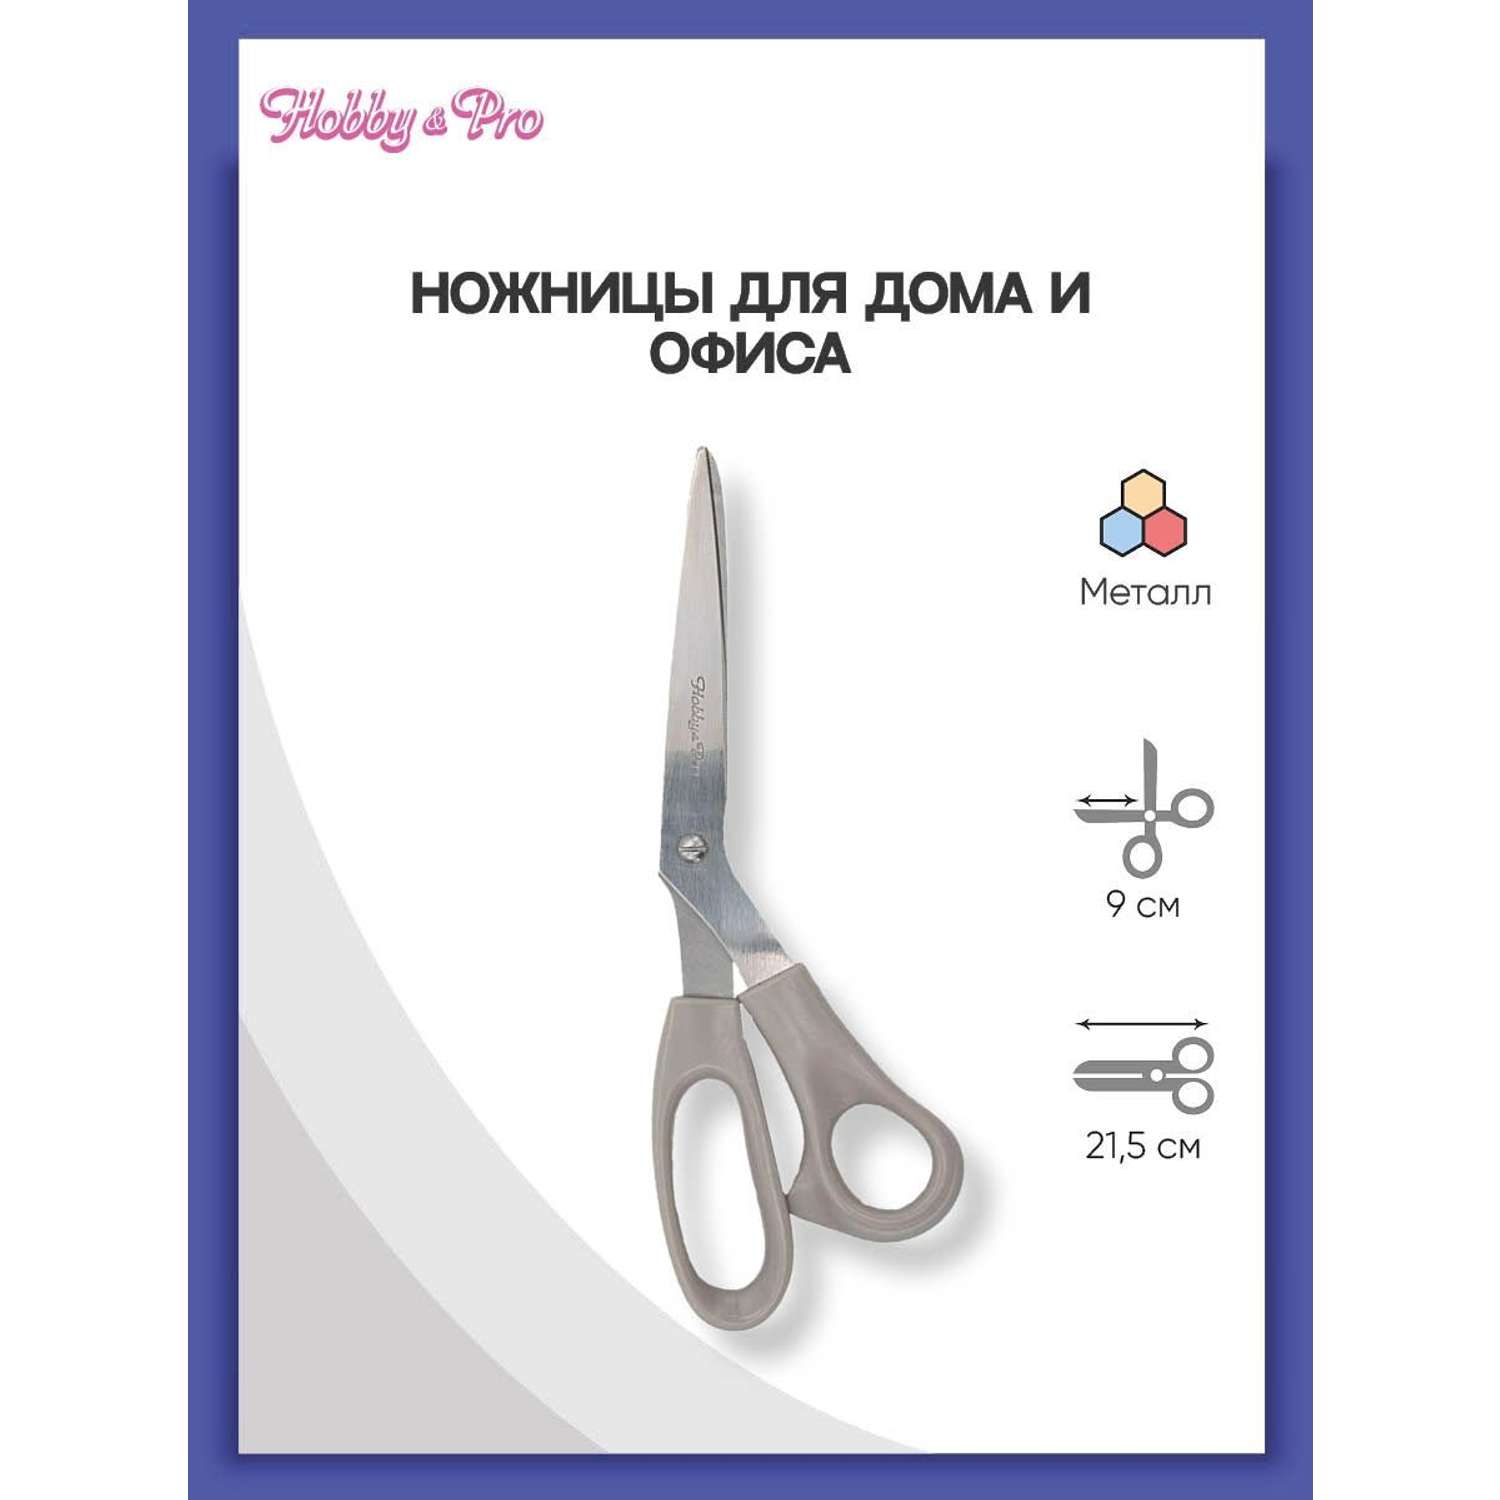 Ножницы для дома и офиса Hobby Pro 21.5 см - фото 1